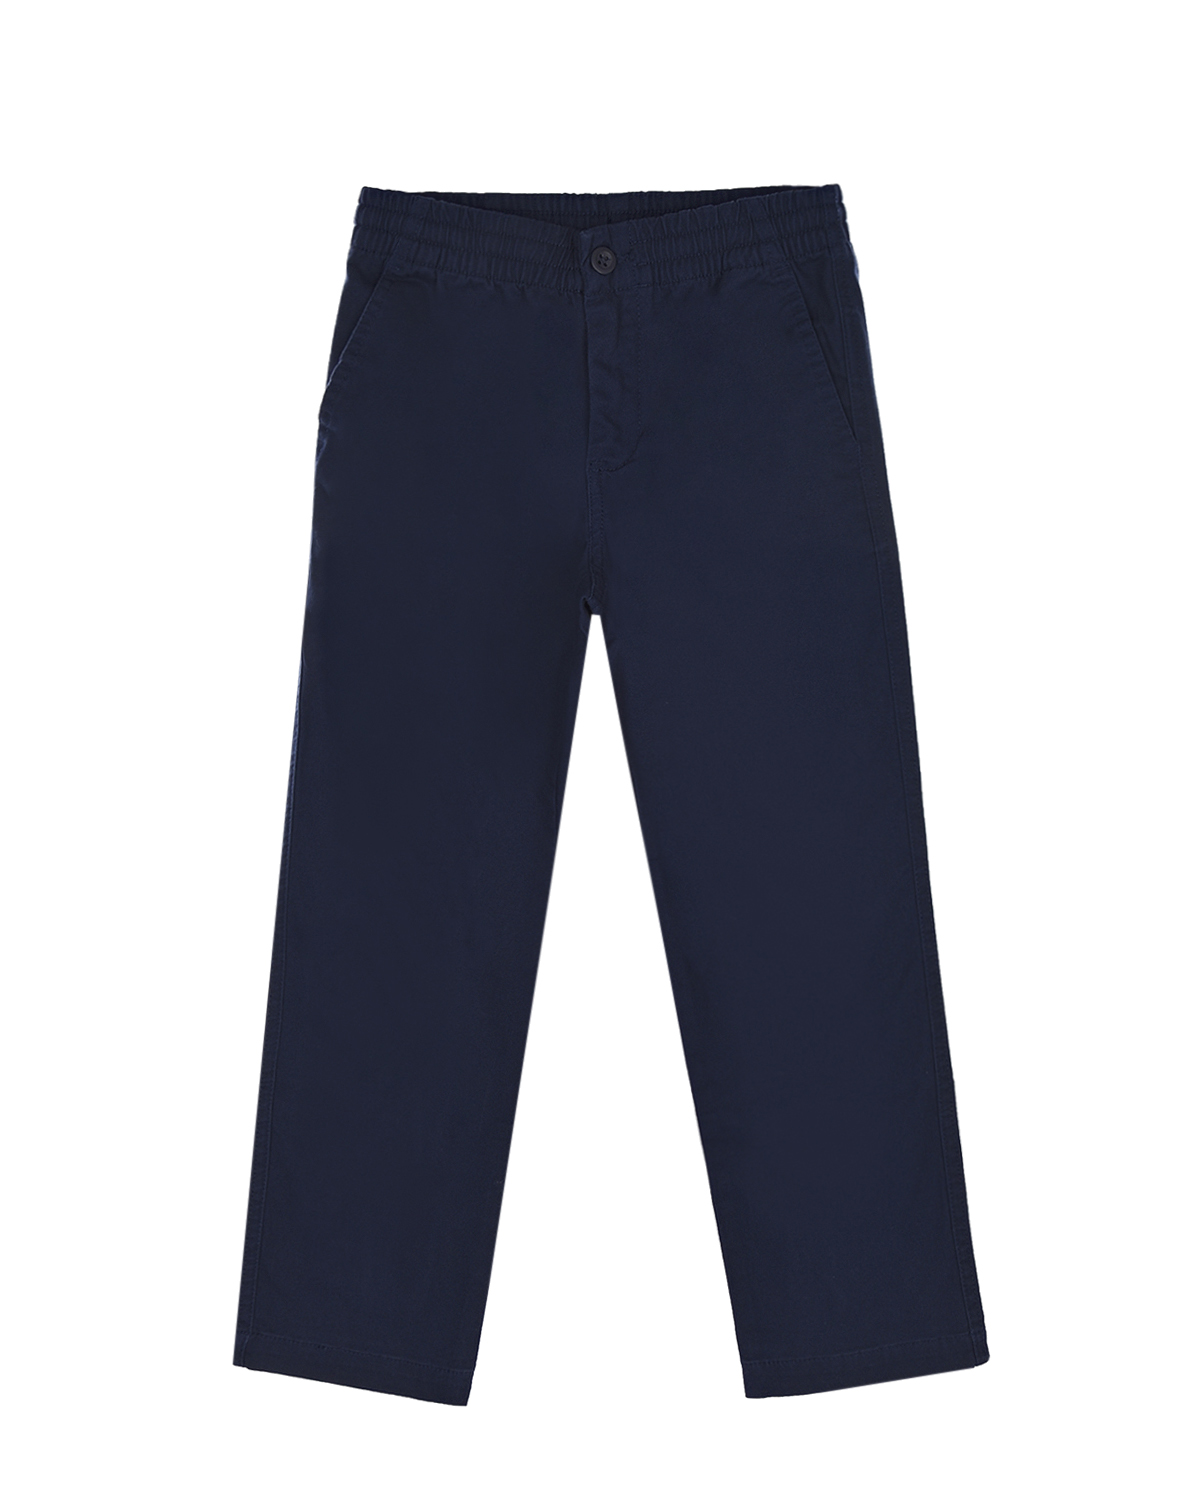 Синие брюки-чиносы Ralph Lauren детские, размер 128, цвет синий